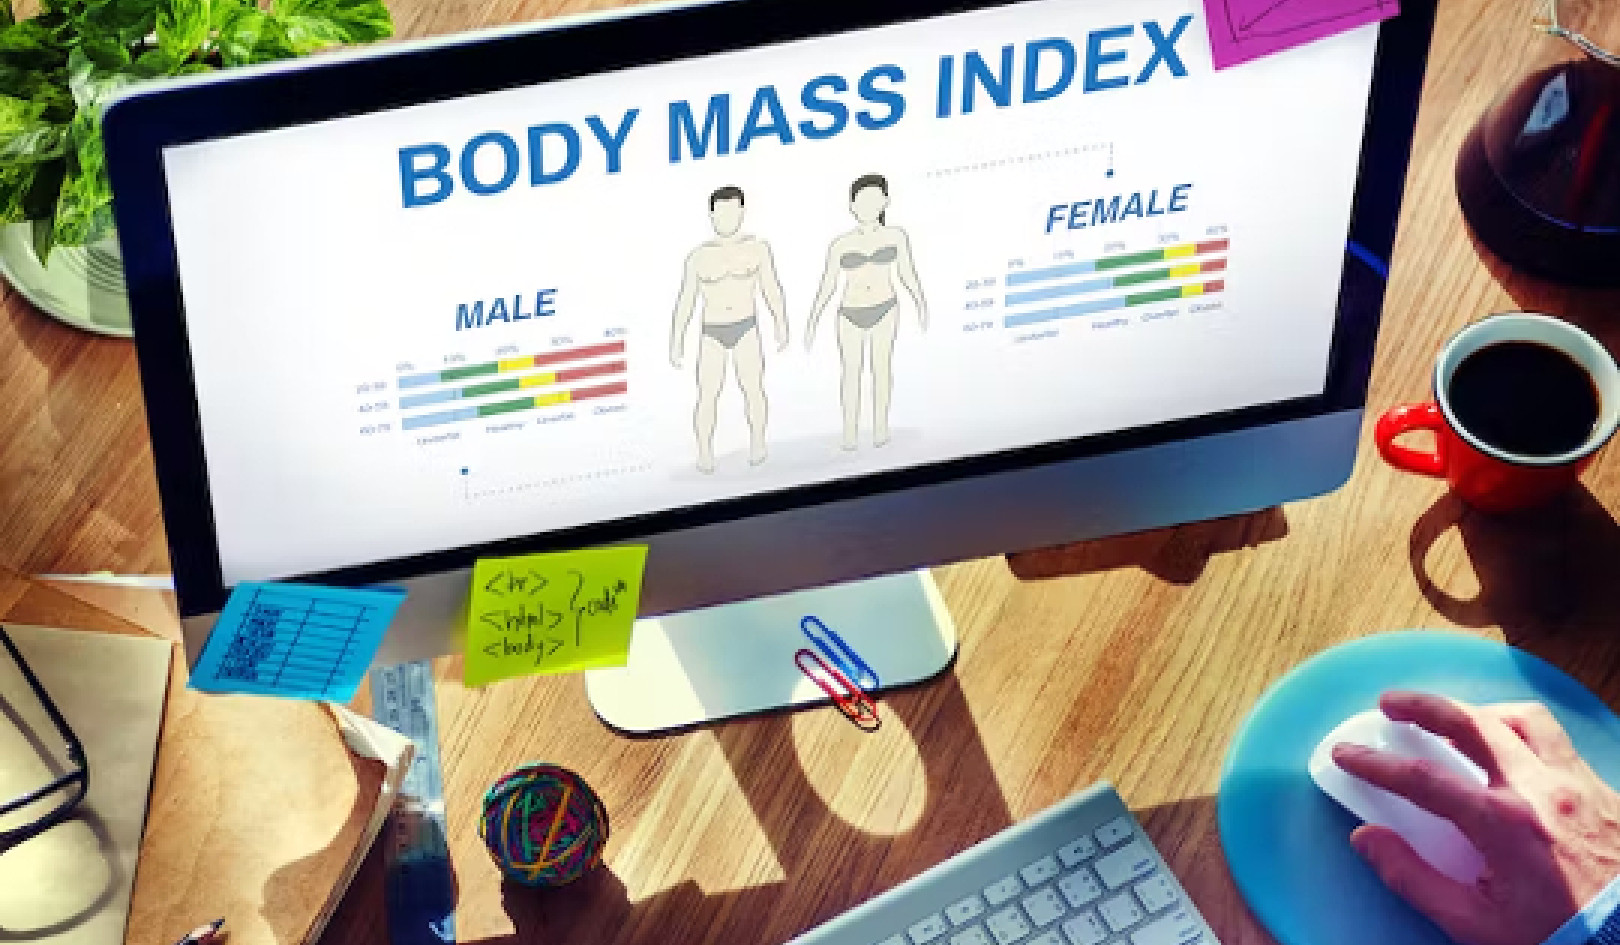 Perché i professionisti fanno meno affidamento sull'indice di massa corporea per la valutazione della salute